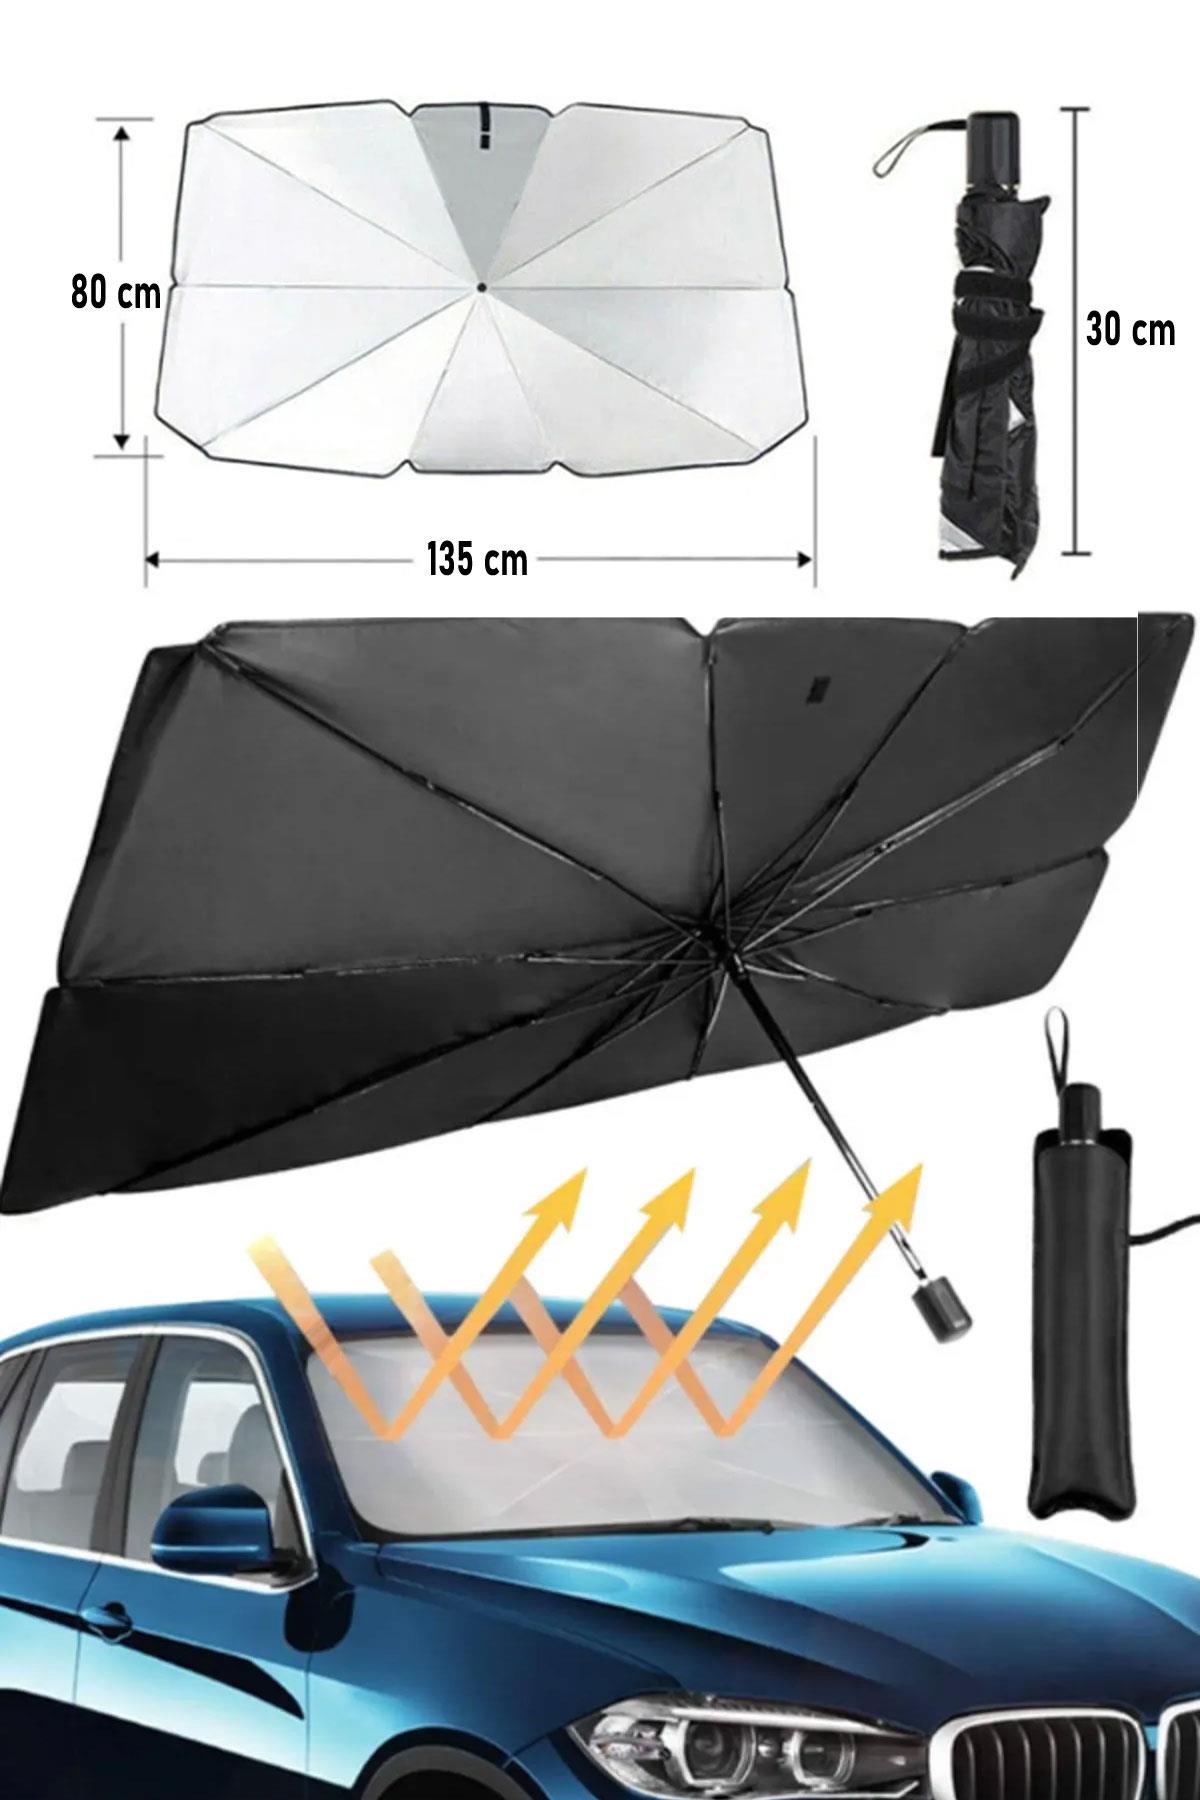 Araba Ön Cam Güneşlik Katlanabilir Güneşlik Şemsiye Ön Cam Gölgelik Büyük  Boy 80 cm x 135